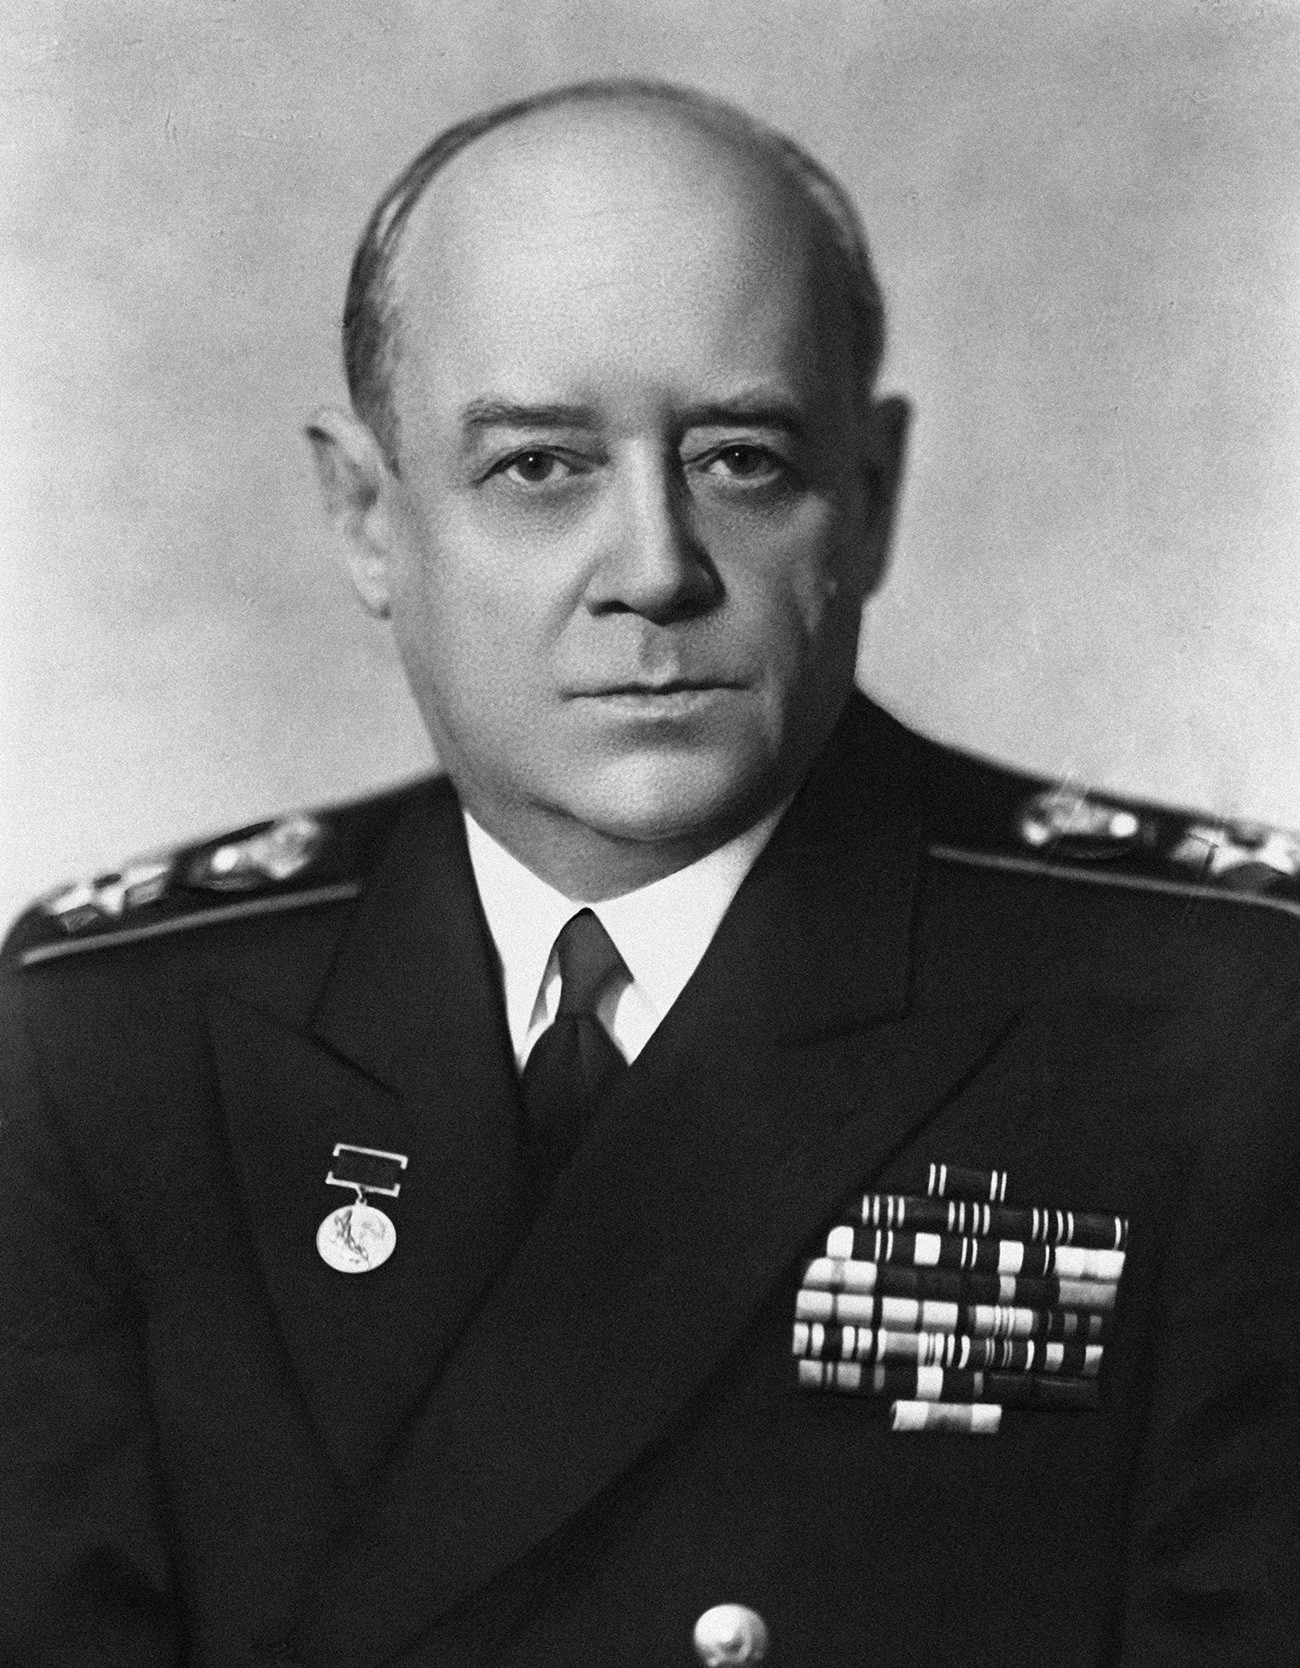 Адмирал флоте Совјетског Савеза Иван Степанович Исаков (1894-1967). Репродукција фотографије.